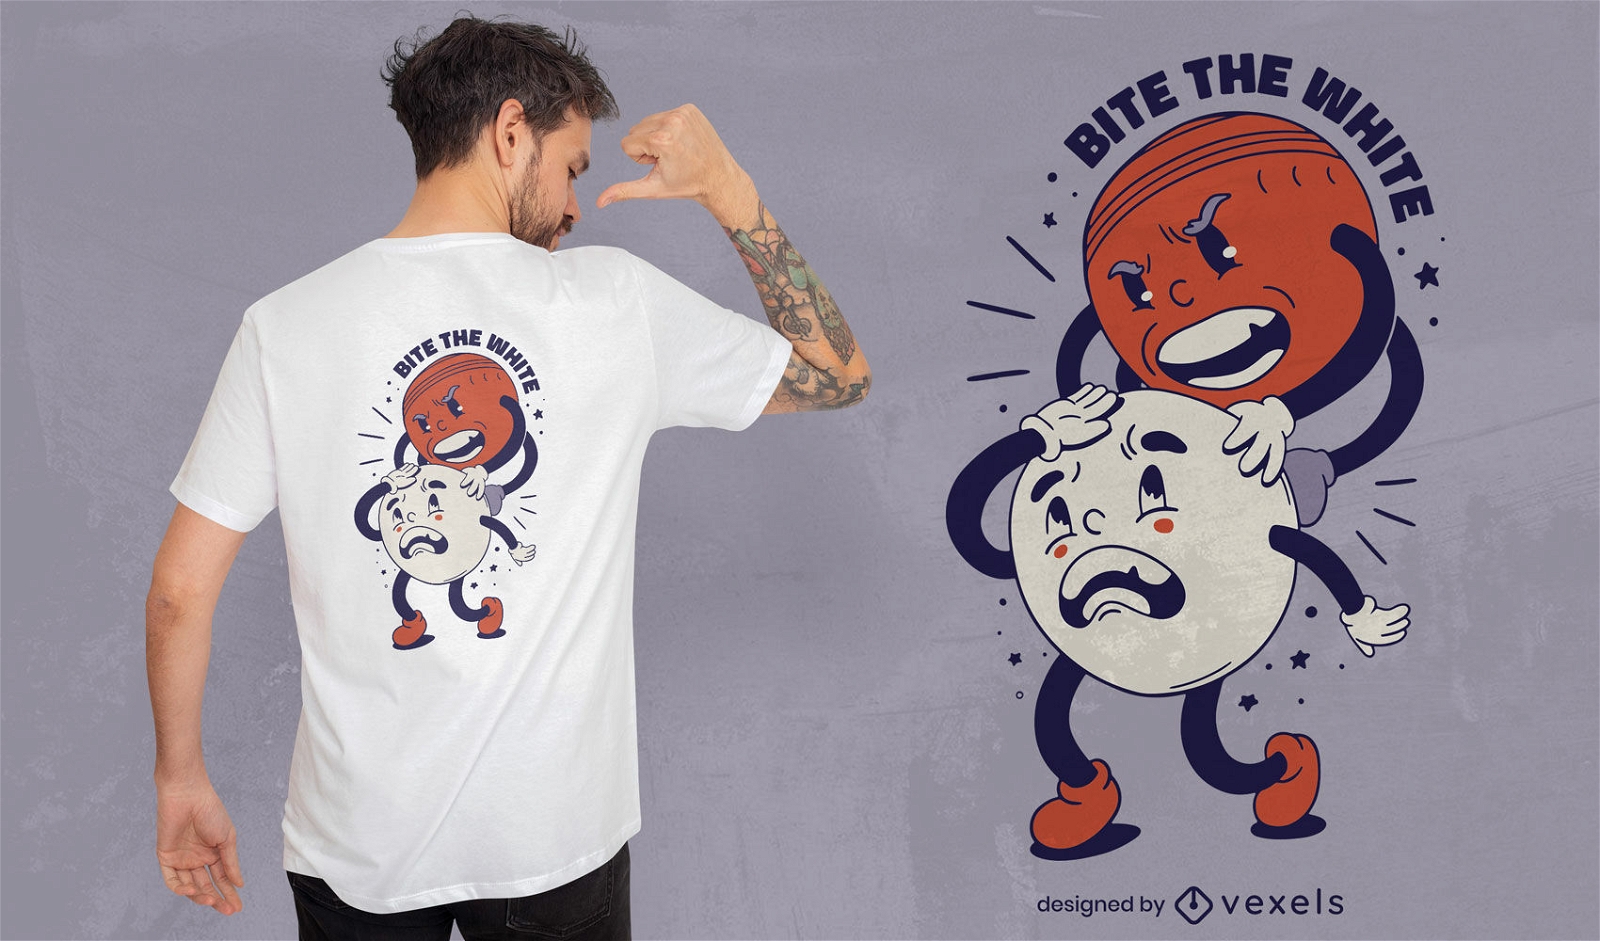 Diseño de camiseta de dibujos animados retro de balones deportivos.